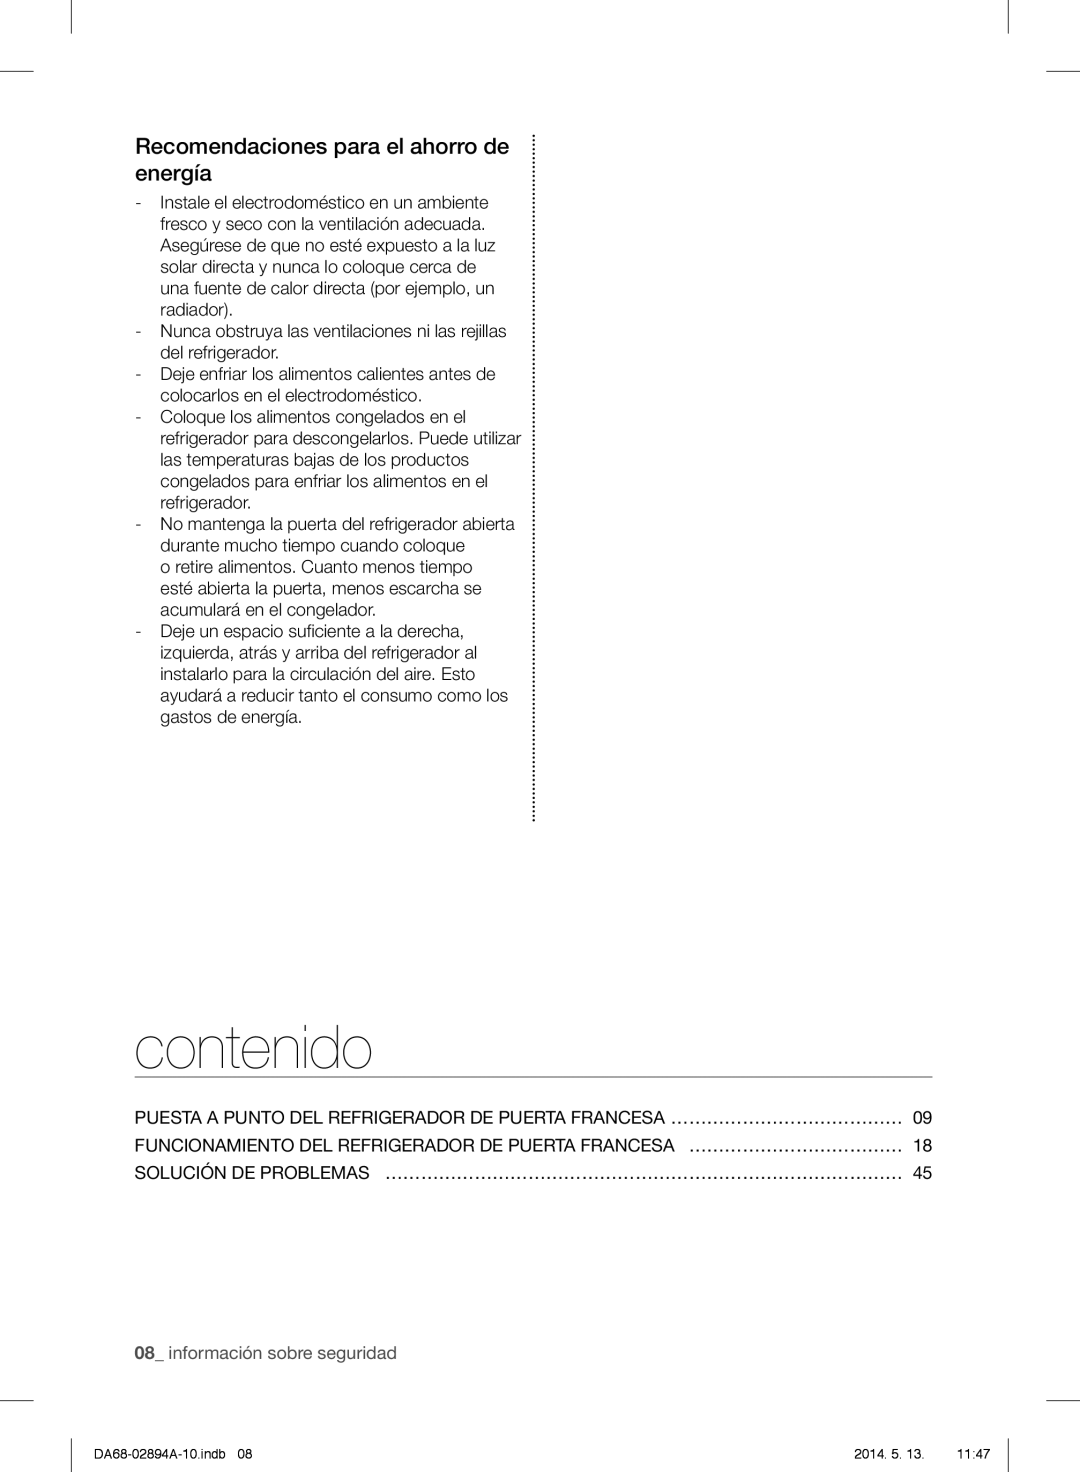 Samsung RF31FMESBSR user manual contenido, Recomendaciones para el ahorro de energía, 08_ información sobre seguridad 